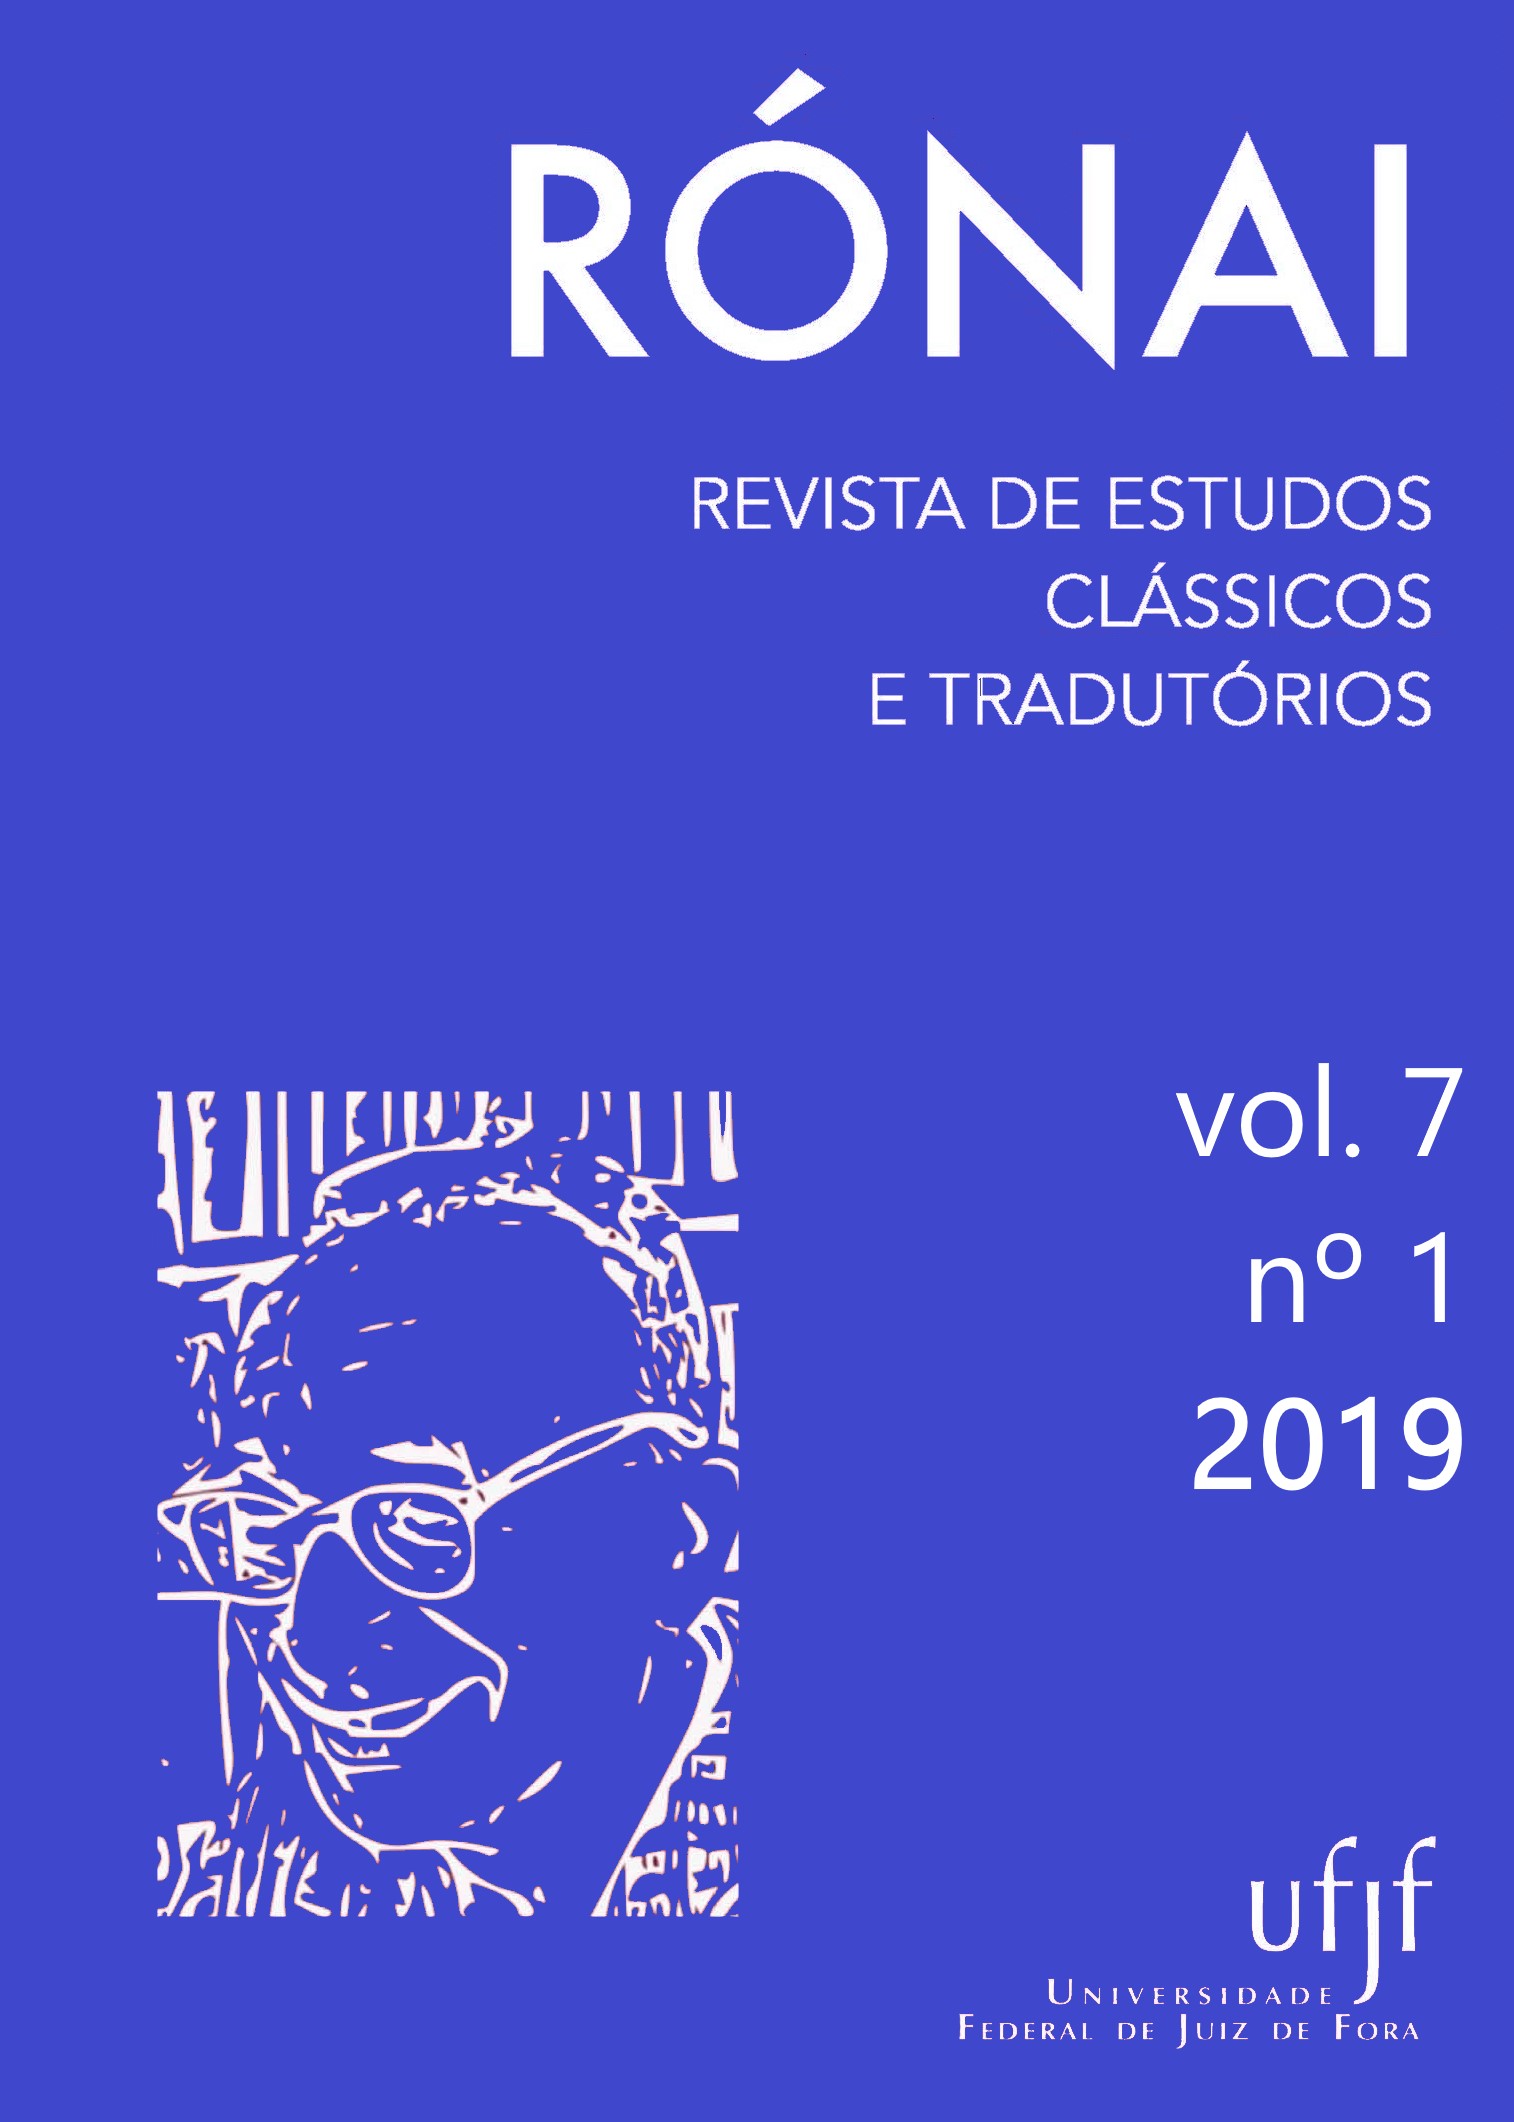 					Visualizar v. 7 n. 1 (2019): Rónai: Revista de Estudos Clássicos e Tradutórios
				